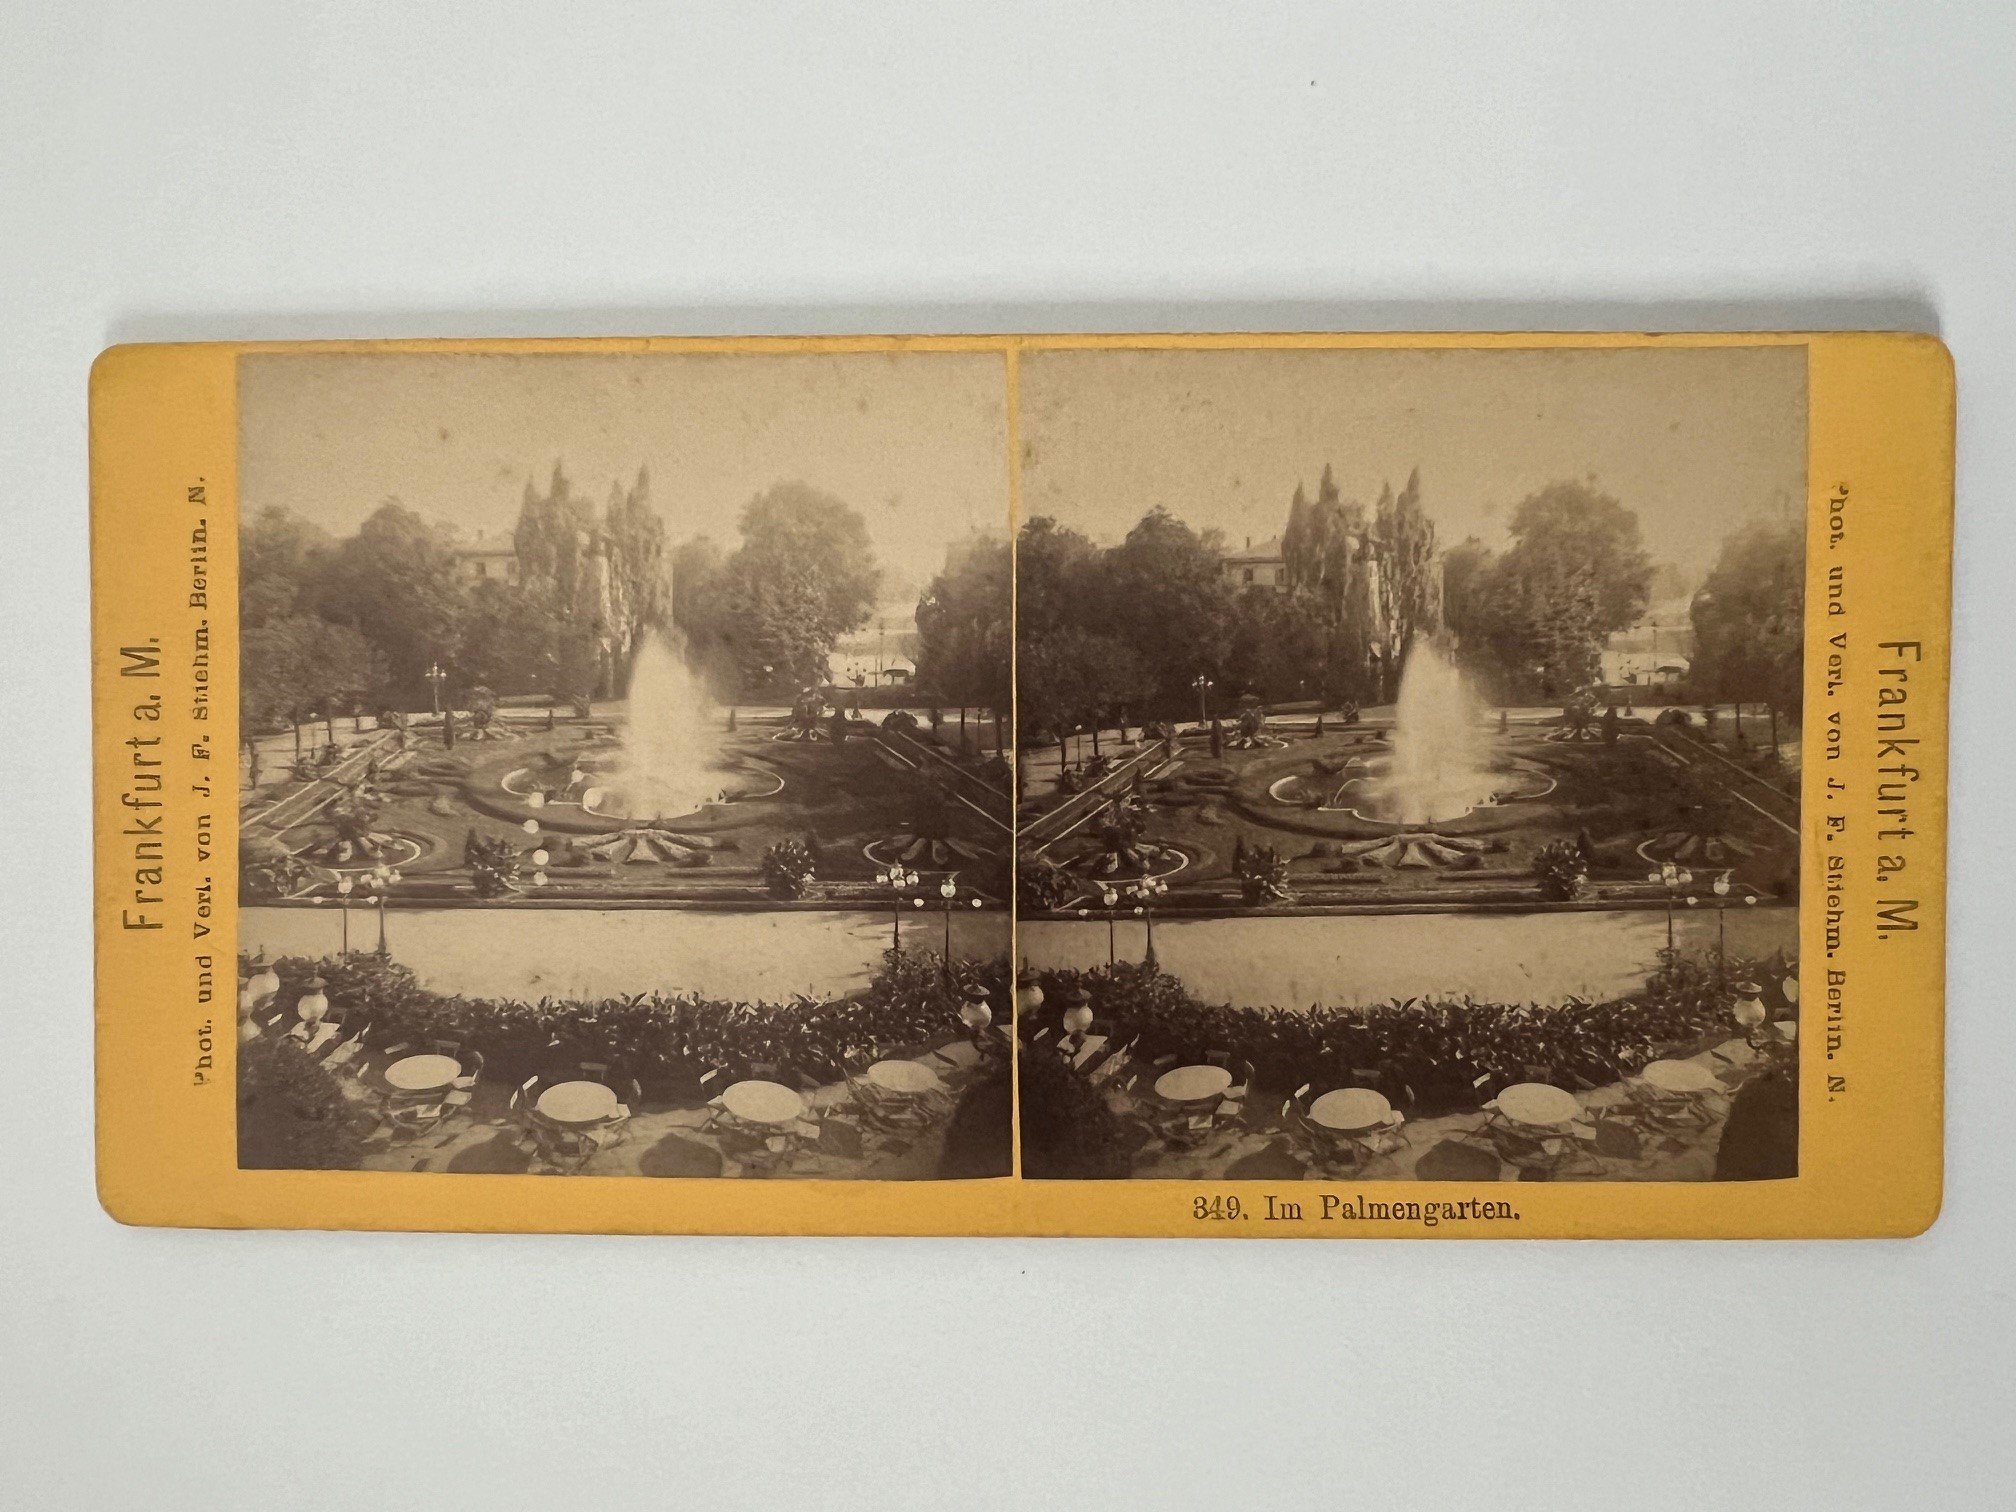 Stereobild, Johann Friedrich Stiehm, Frankfurt, Nr. 349, Im Palmengarten, ca. 1880. (Taunus-Rhein-Main - Regionalgeschichtliche Sammlung Dr. Stefan Naas CC BY-NC-SA)